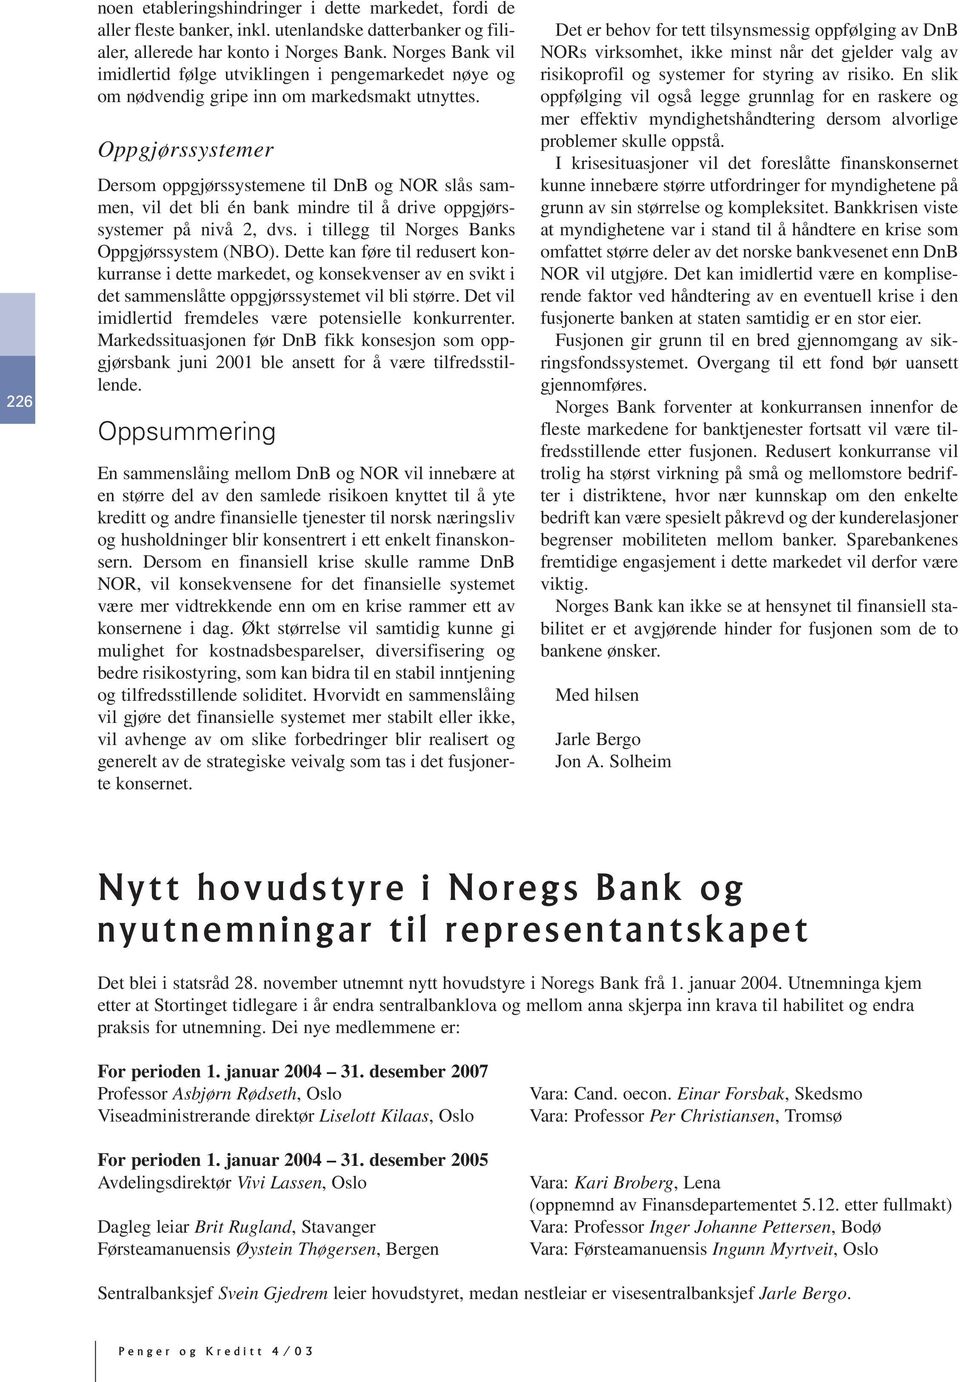 Oppgjørssystemer Dersom oppgjørssystemene til DnB og NOR slås sammen, vil det bli én bank mindre til å drive oppgjørssystemer på nivå 2, dvs. i tillegg til Norges Banks Oppgjørssystem (NBO).